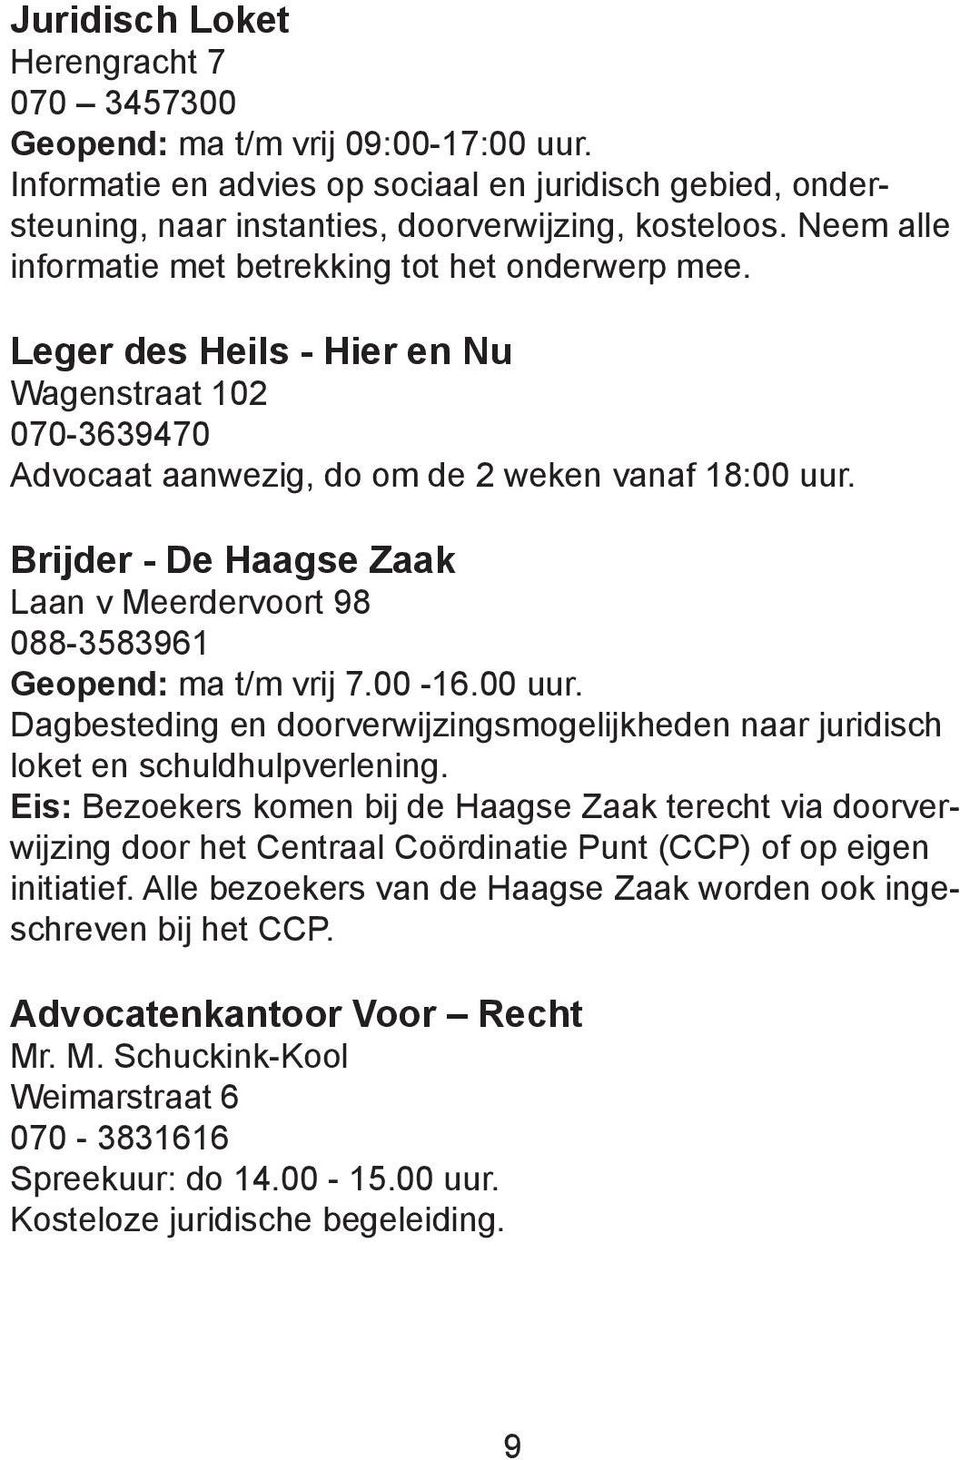 Brijder - De Haagse Zaak Laan v Meerdervoort 98 088-3583961 Geopend: ma t/m vrij 7.00-16.00 uur. Dagbesteding en doorverwijzingsmogelijkheden naar juridisch loket en schuldhulpverlening.